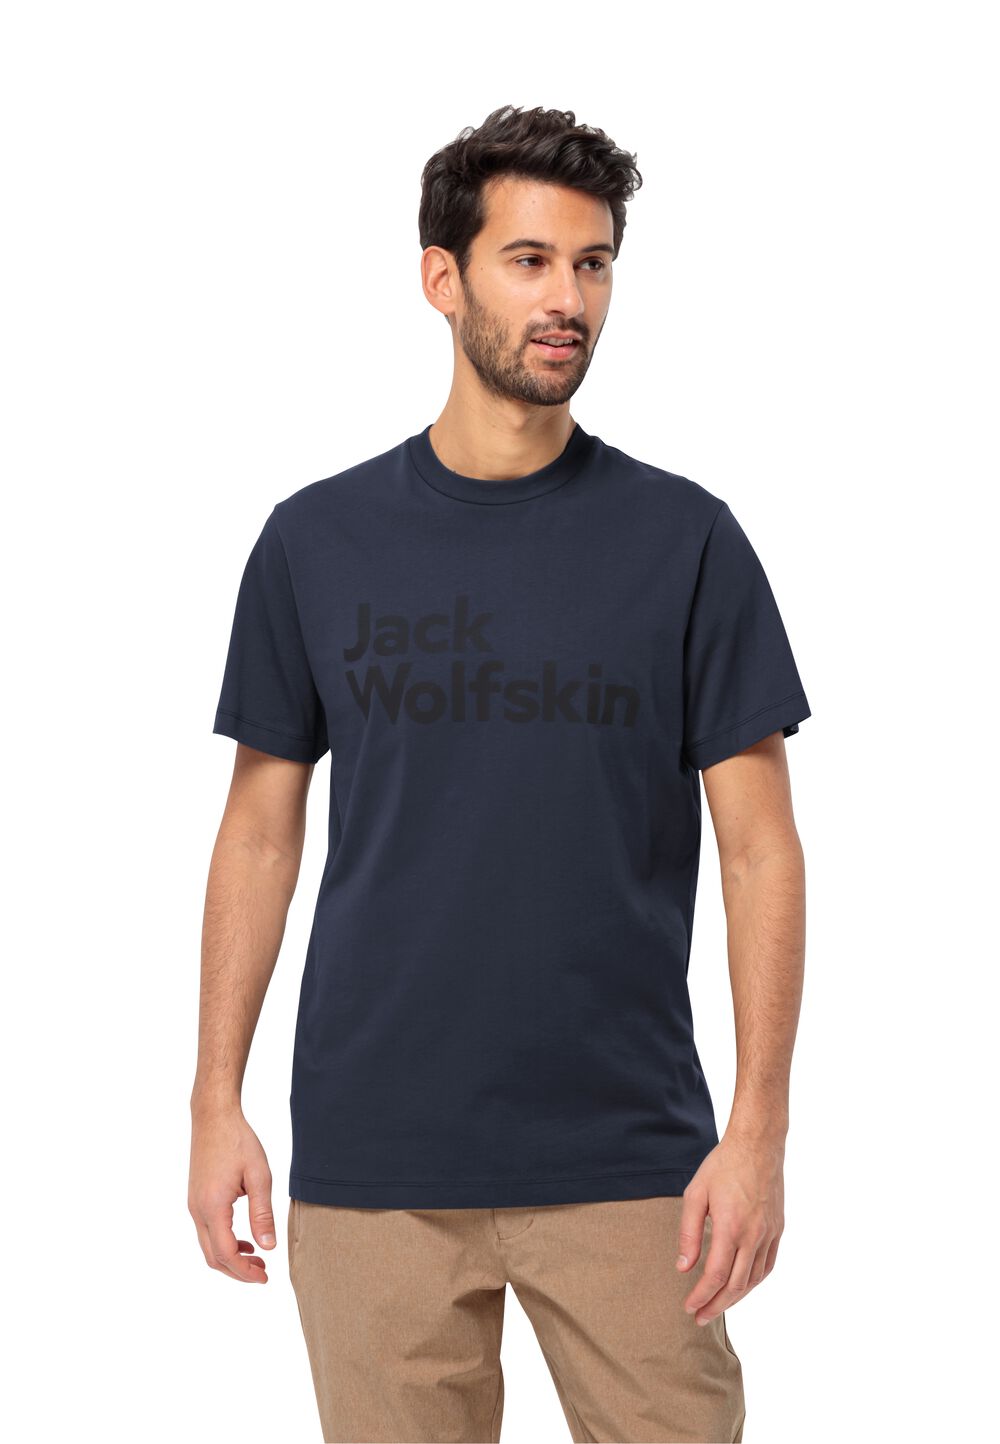 Jack Wolfskin T-Shirt aus Bio-Baumwolle Herren Essential Logo T-Shirt Men M blau night blue von Jack Wolfskin